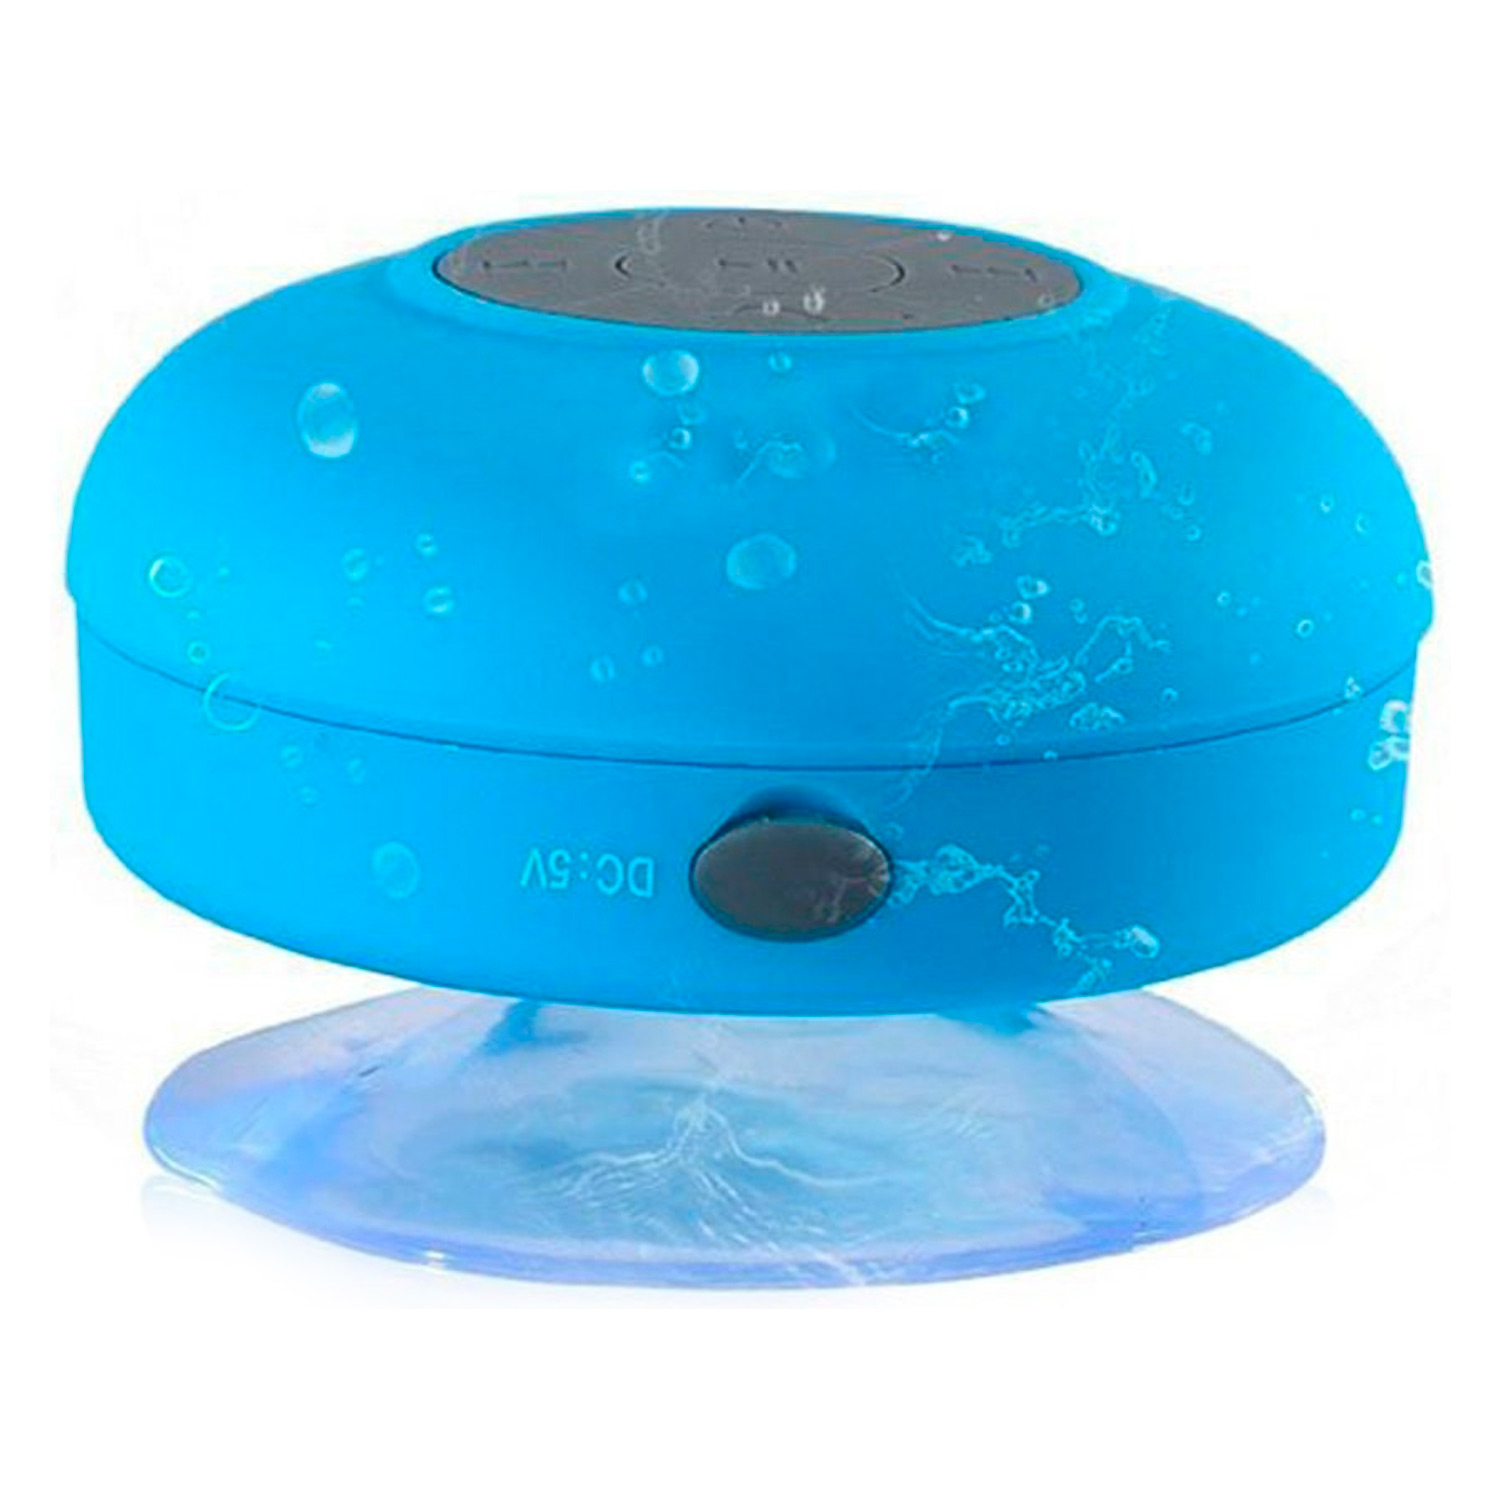 Speaker Portátil BTS-06 Bluetooth - Azul